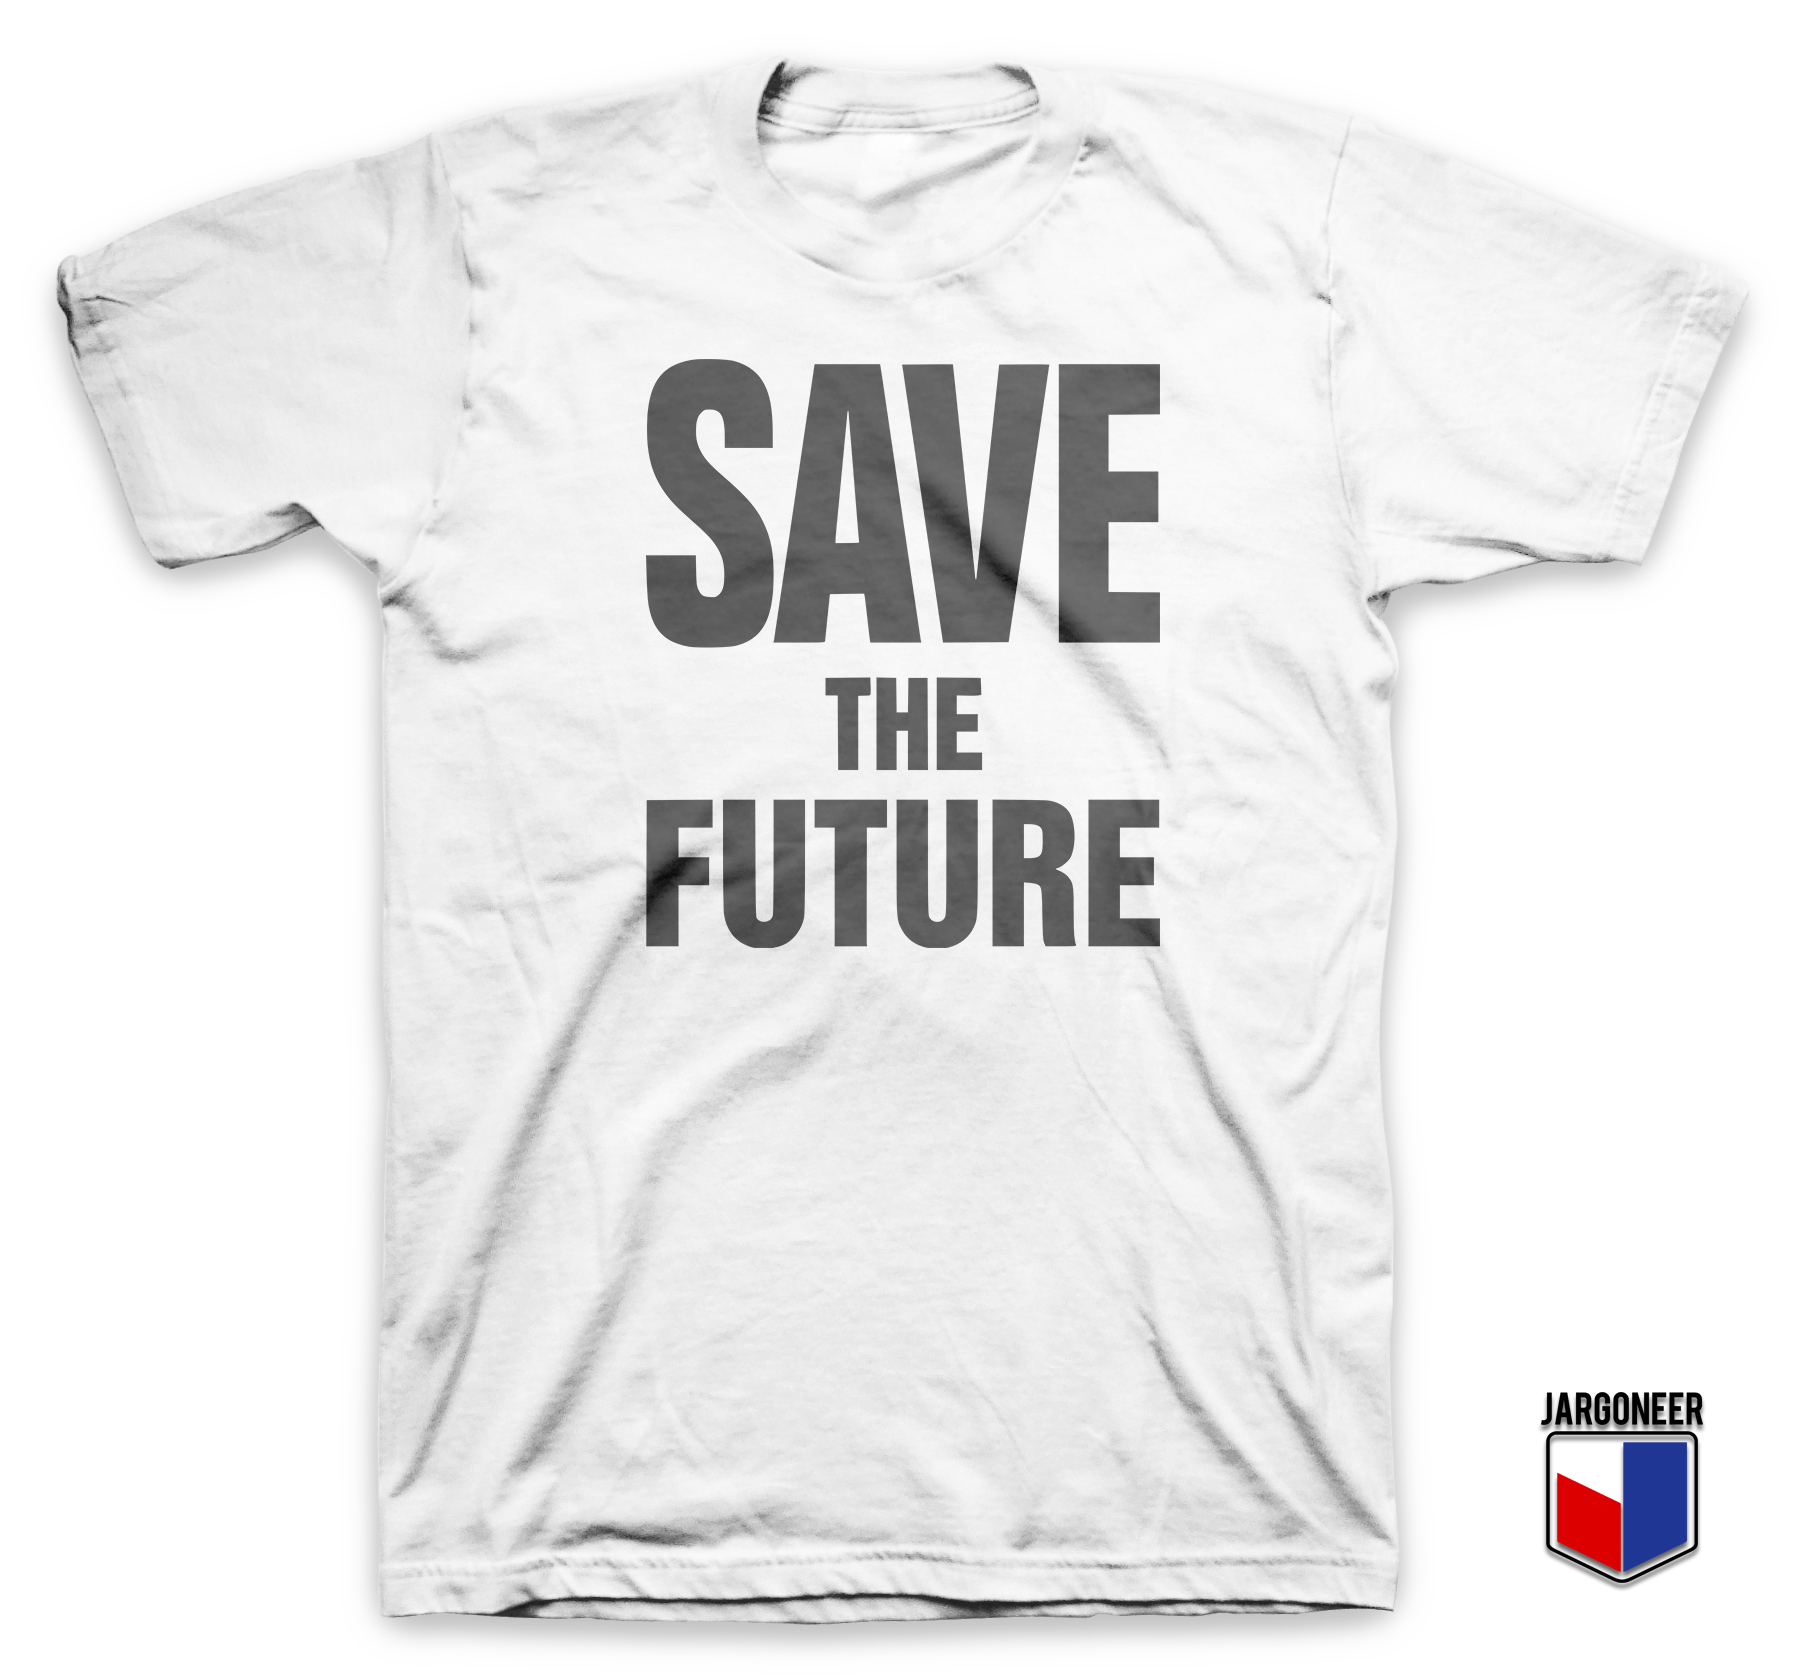 Save The Future - Shop Unique Graphic Cool Shirt Designs